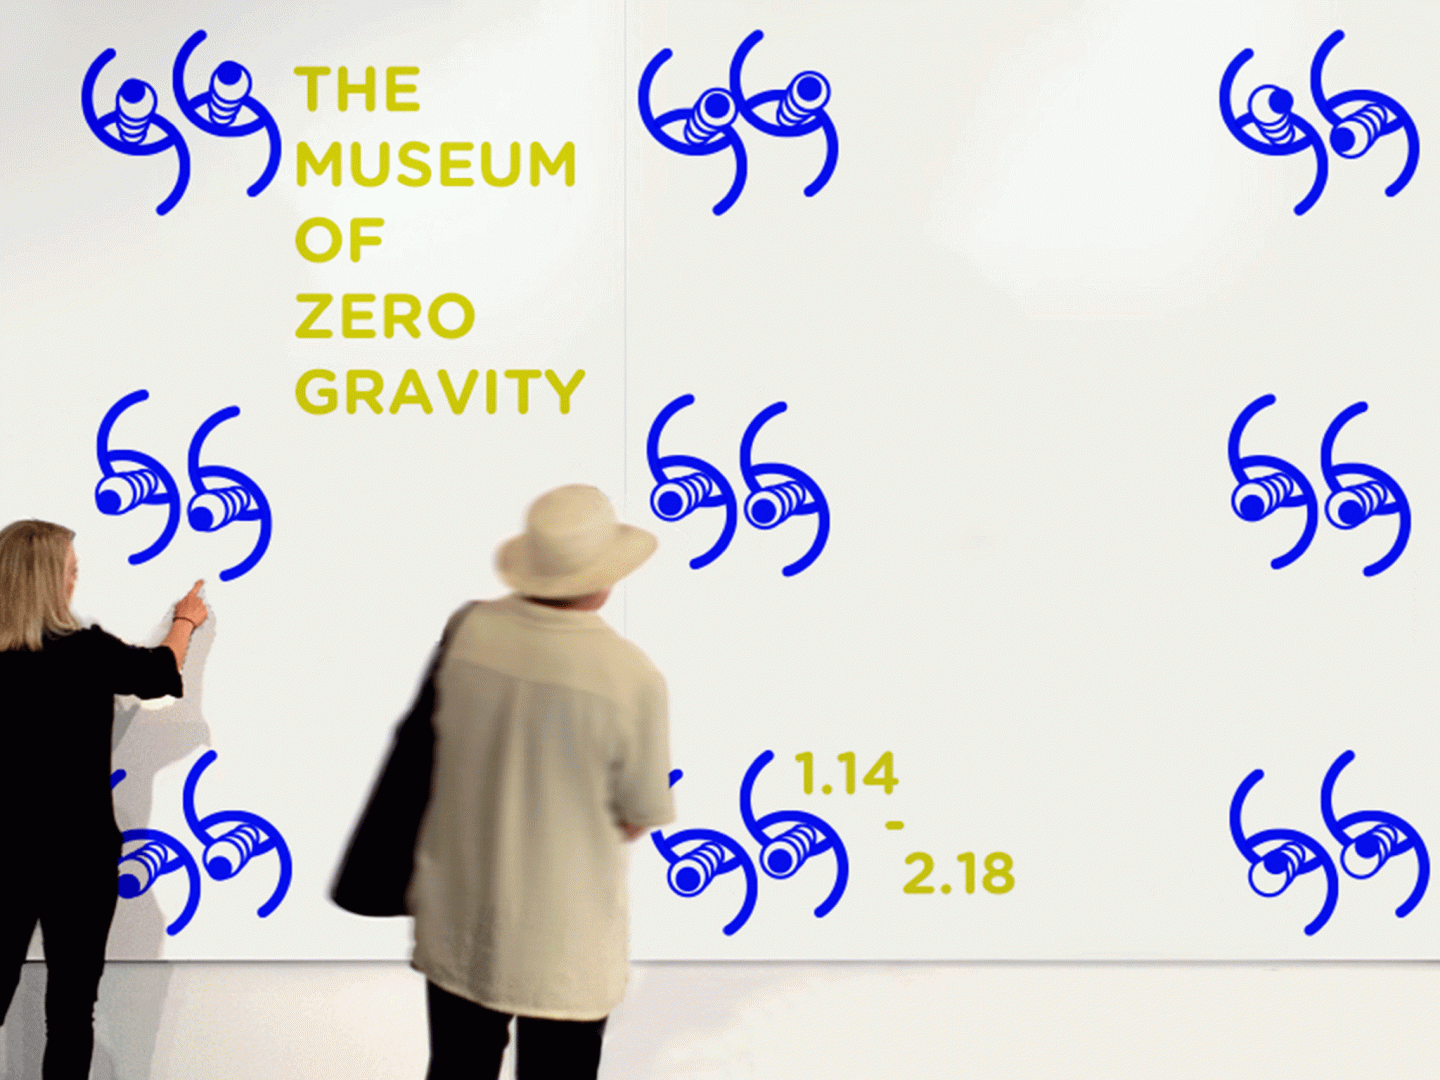 The Museum of Zero Gravity